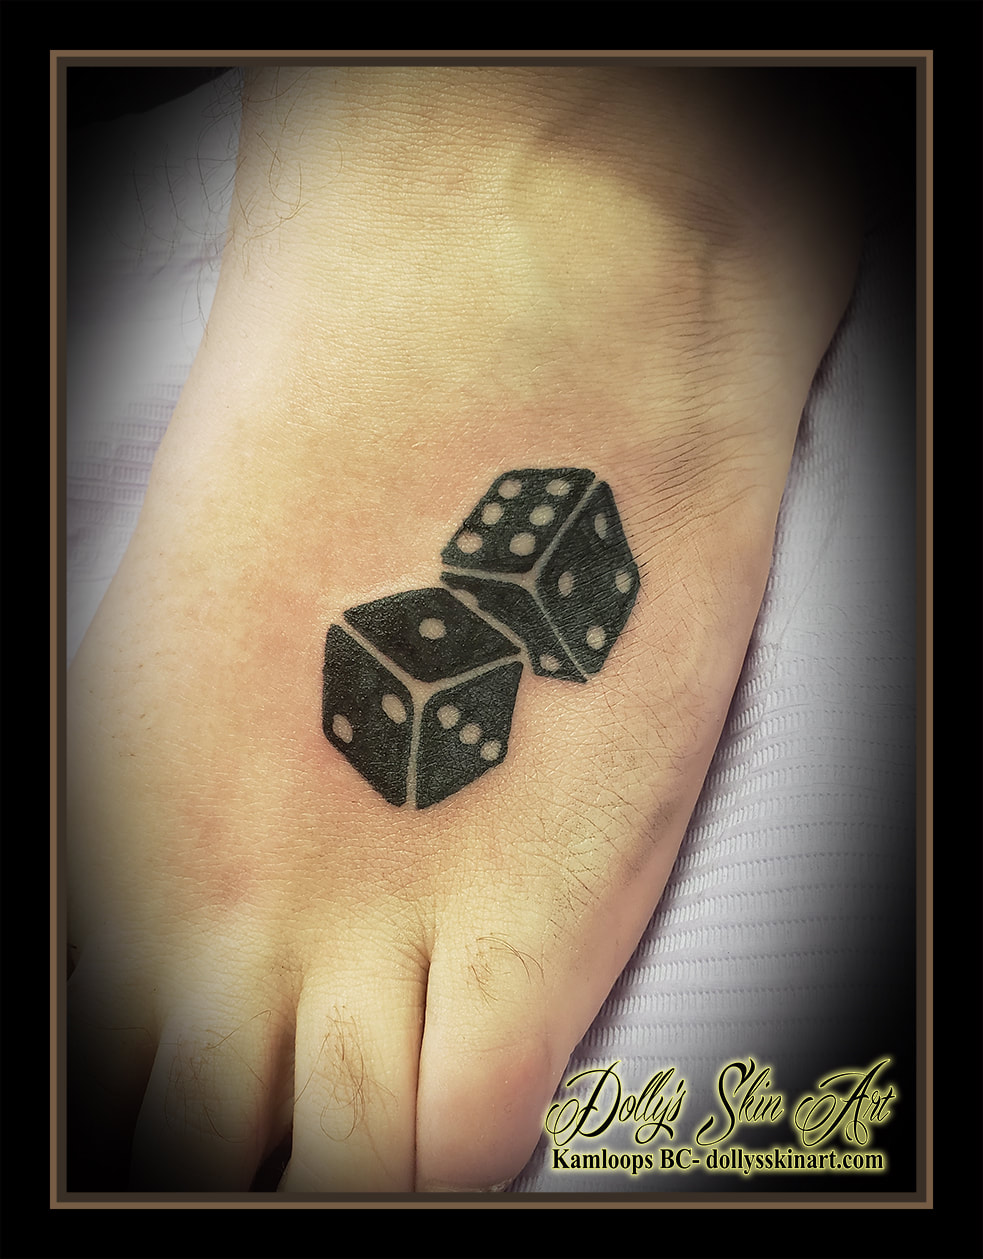 dice tattoo black 6 1 7 die foot tattoo kamloops dolly's skin art